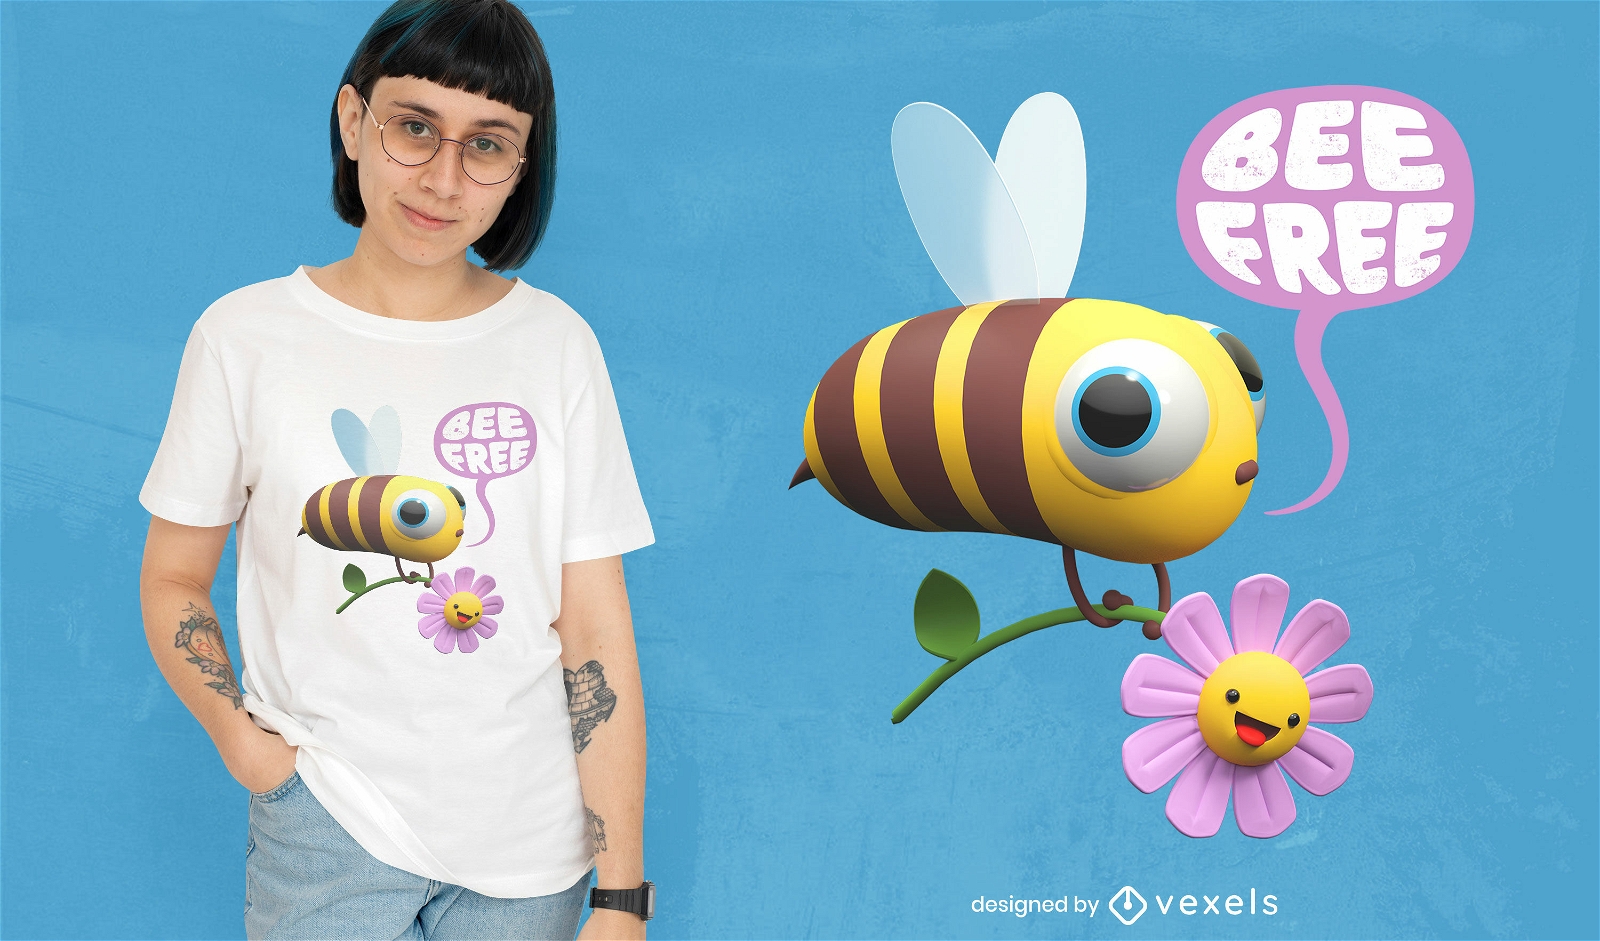 Bee free 3D psd t-shirt design